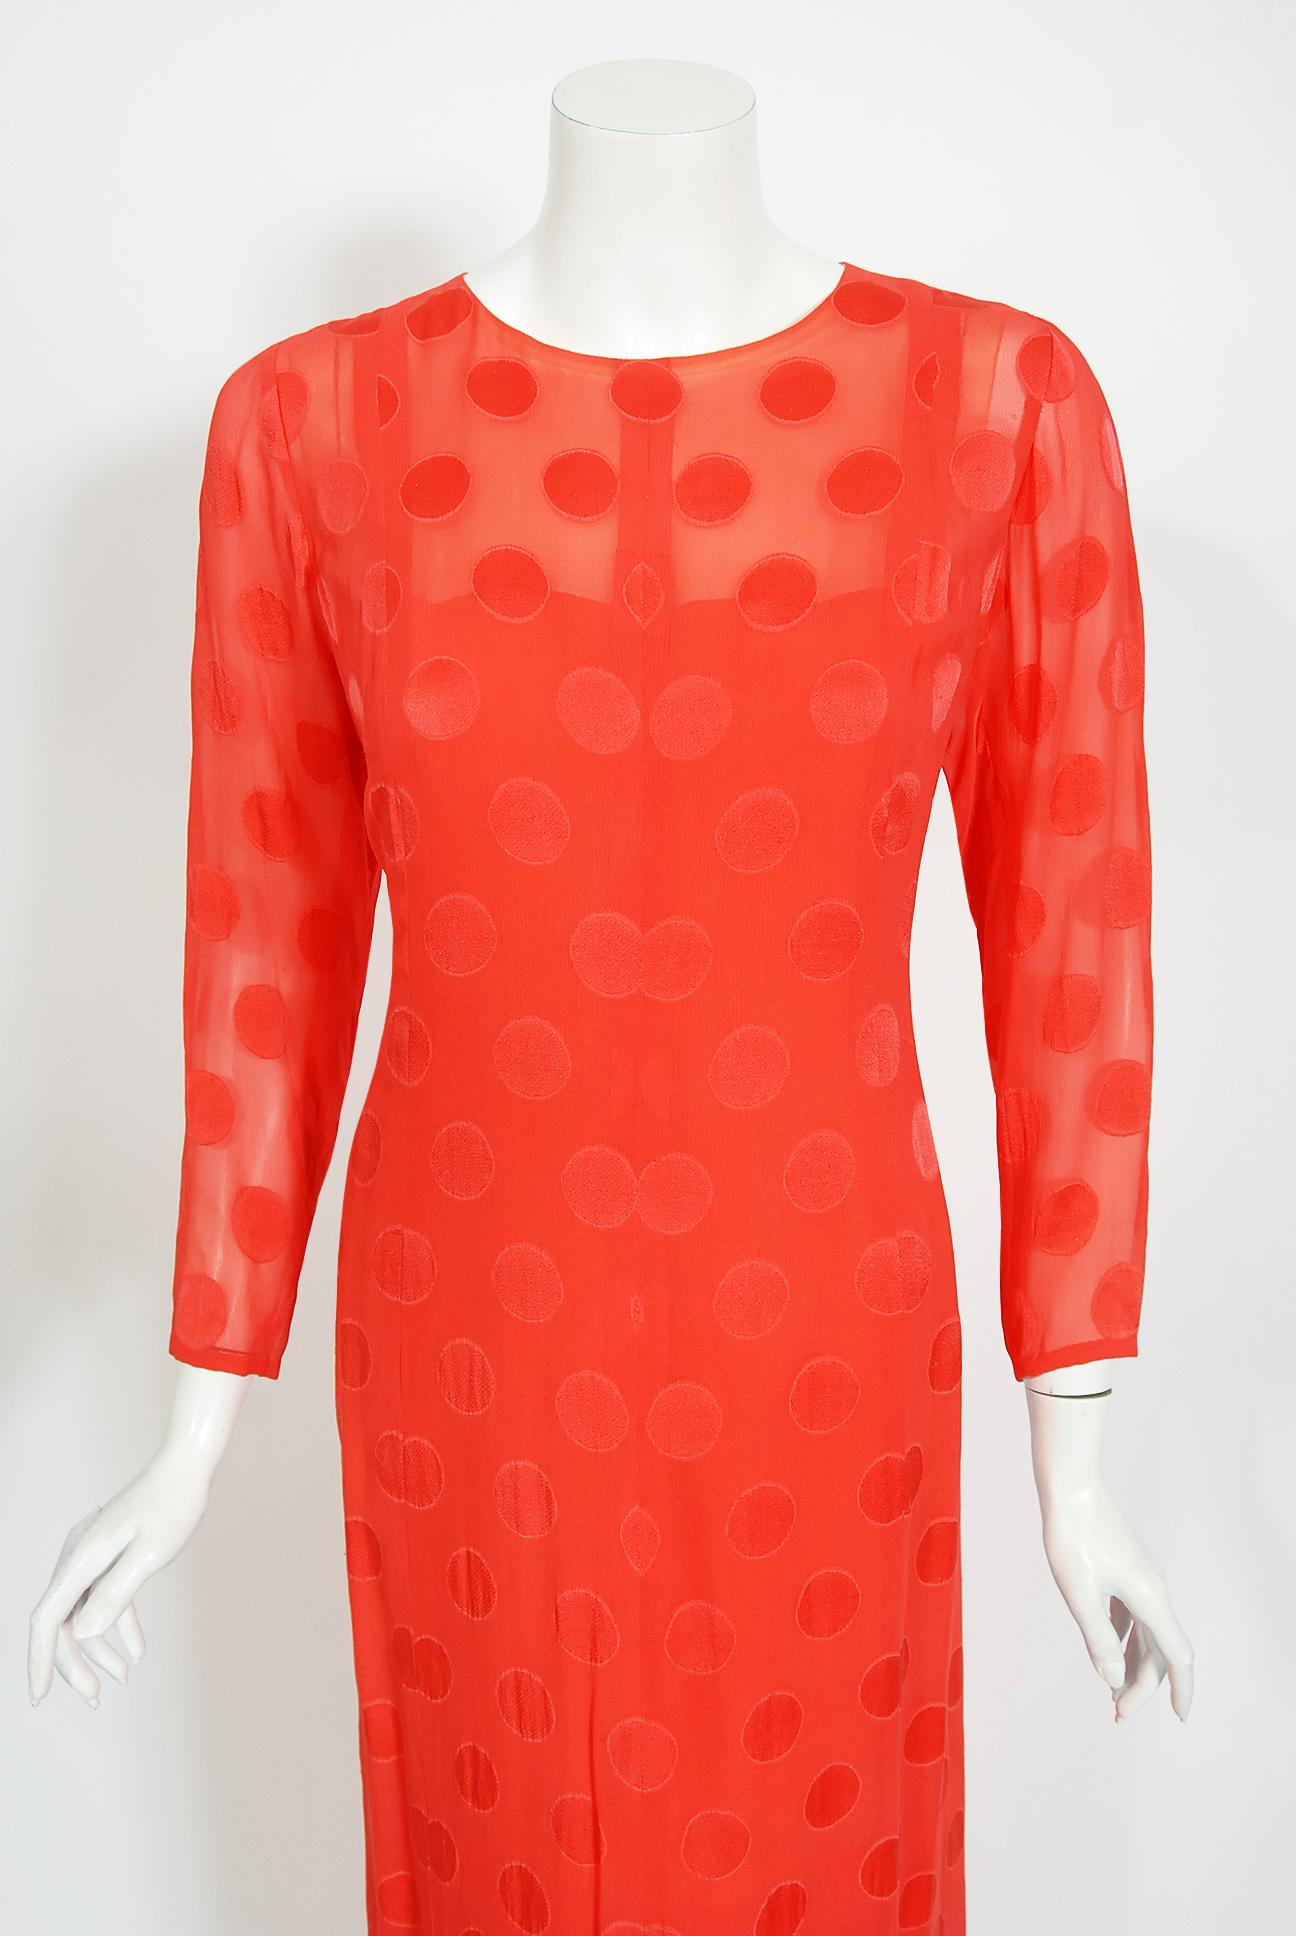 Une magnifique robe en soie à pois orange vif de Givenchy, numérotée haute couture, datant de sa collection printemps-été 1973. Ce rare ensemble de quatre pièces a été réalisé pour Mona von Bismarck (1897-1983), mondaine internationale et icône de